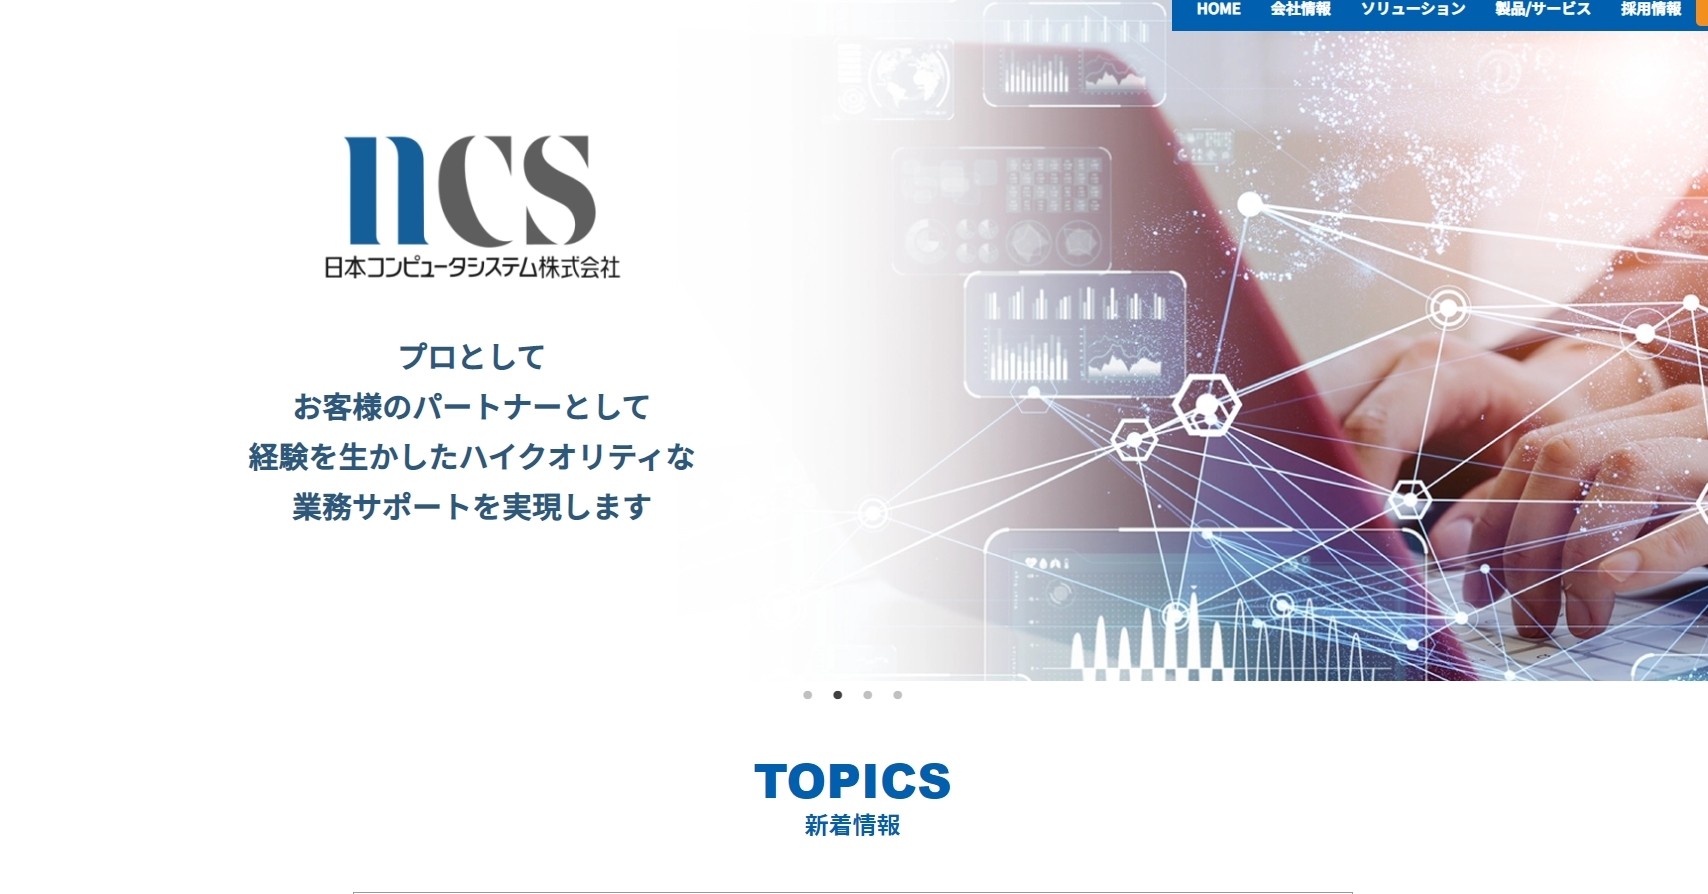 日本コンピュータシステム株式会社の日本コンピュータシステム株式会社サービス